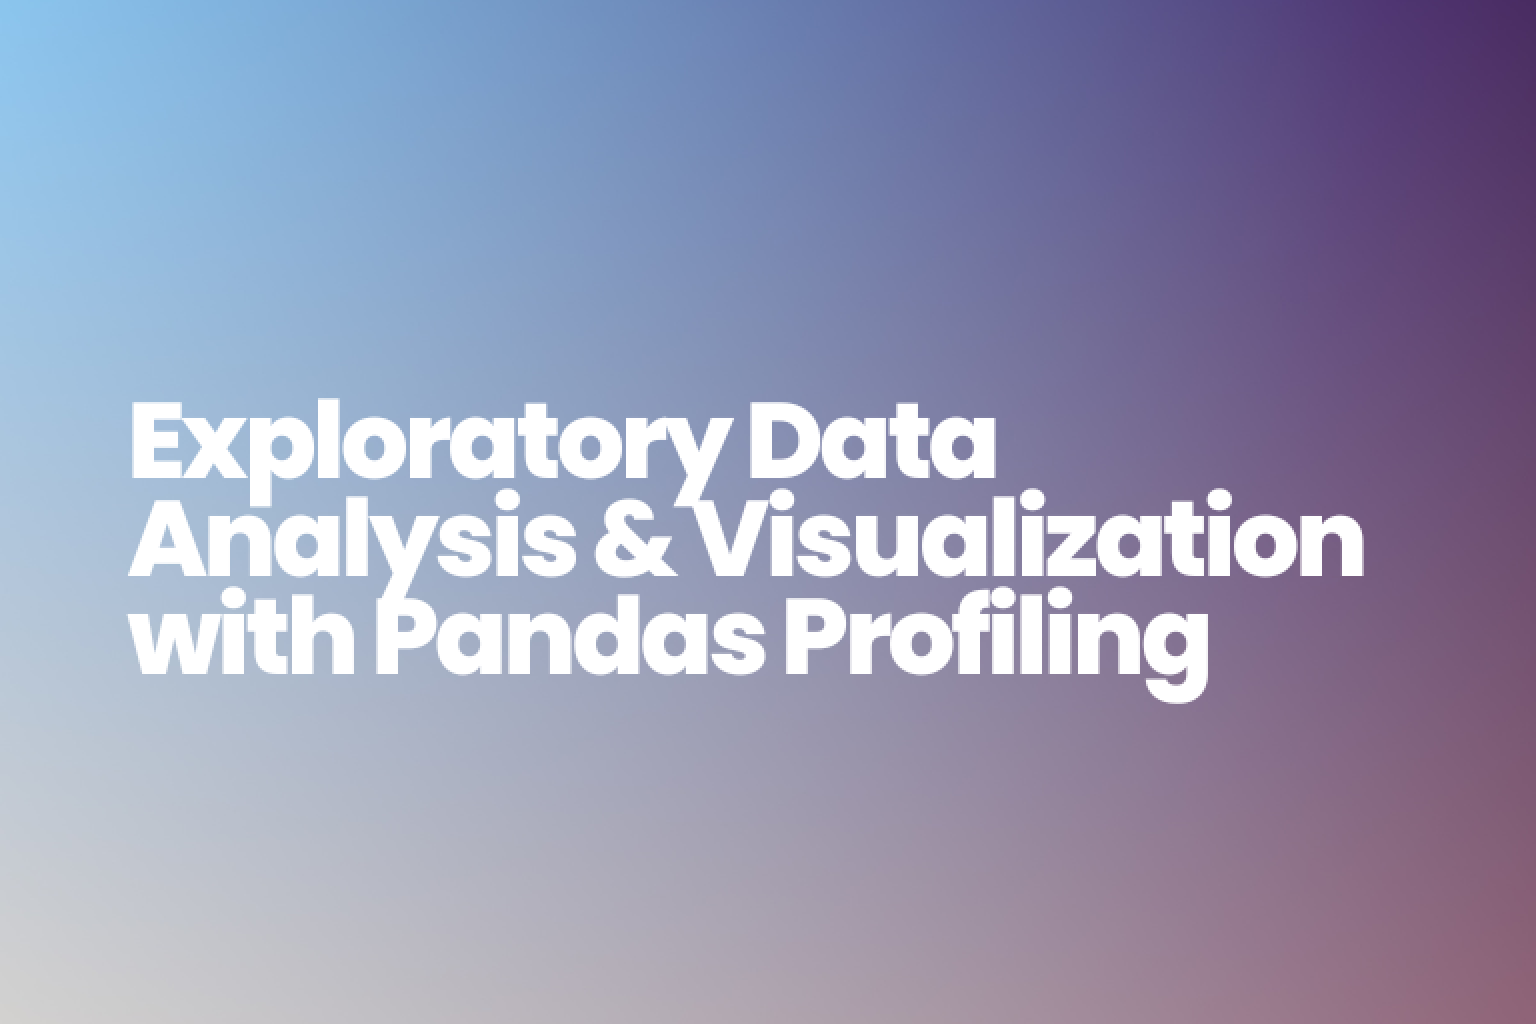 Pandas プロファイリングと RATH を使用して、Python で探索的データ分析を実行する方法を学びます。各方法の長所と短所を理解し、データ サイエンス ワークフローに最適な方法を選択してください。